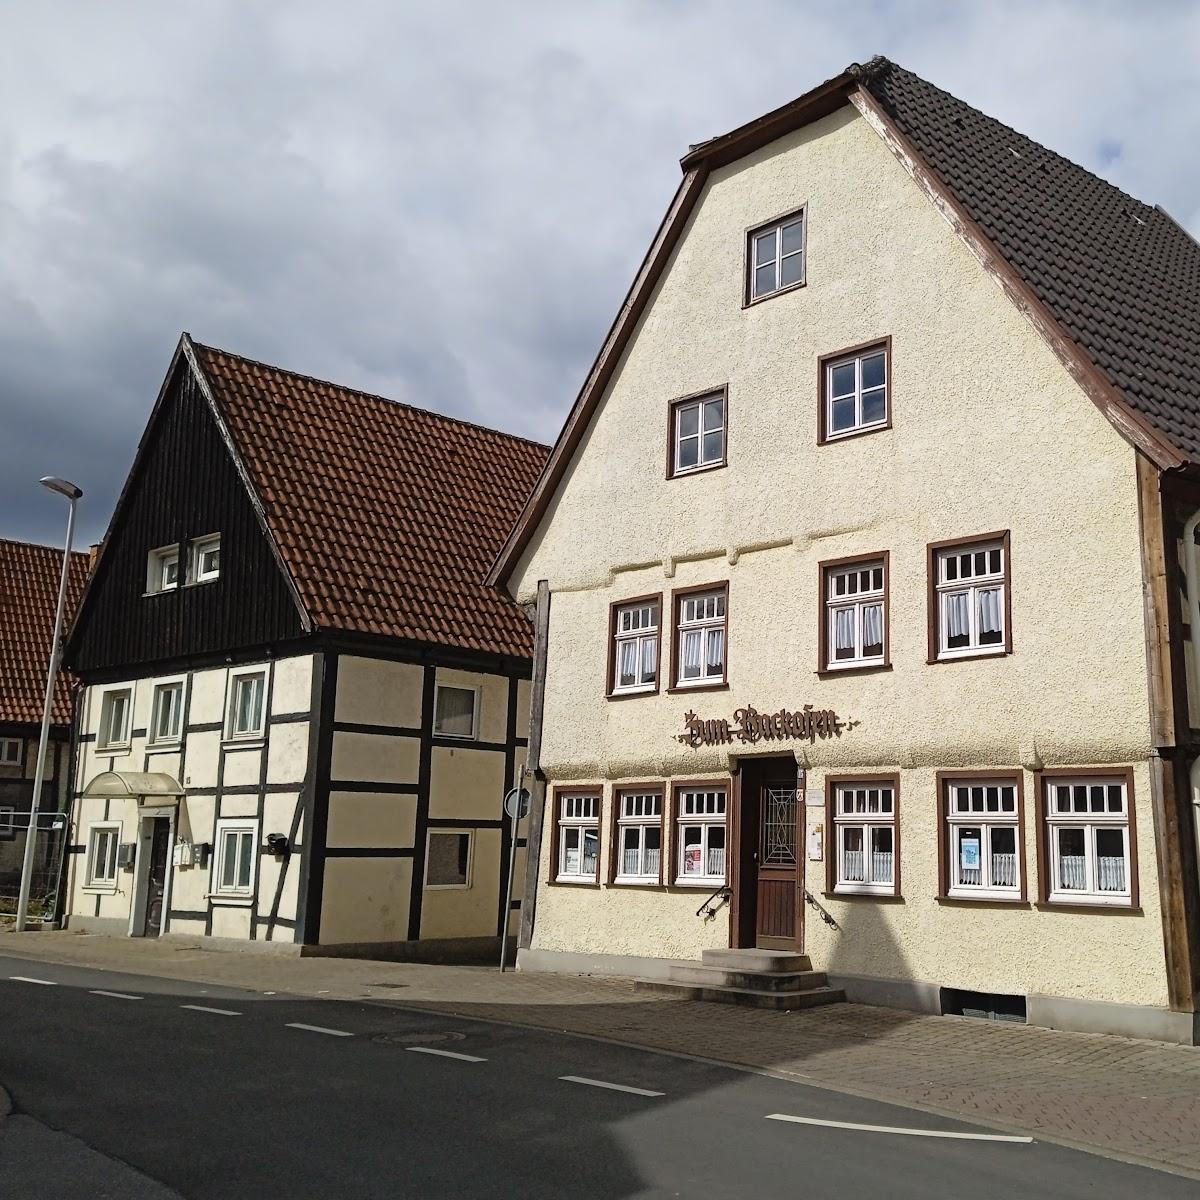 Restaurant "Zum Backofen" in Werl